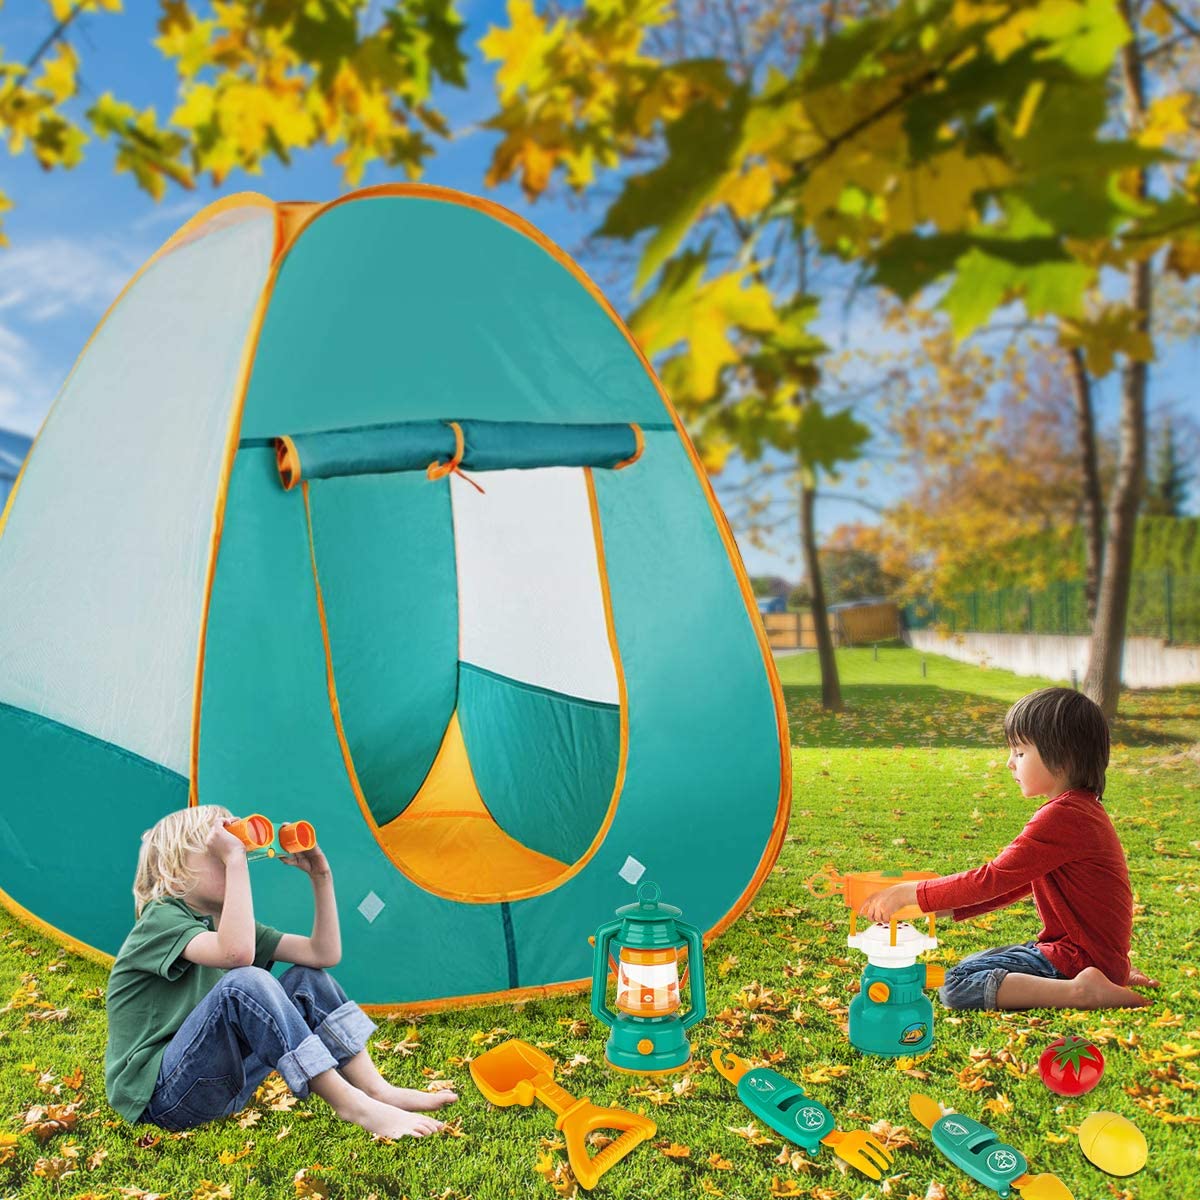 KAQINU’s Kids Camping Set